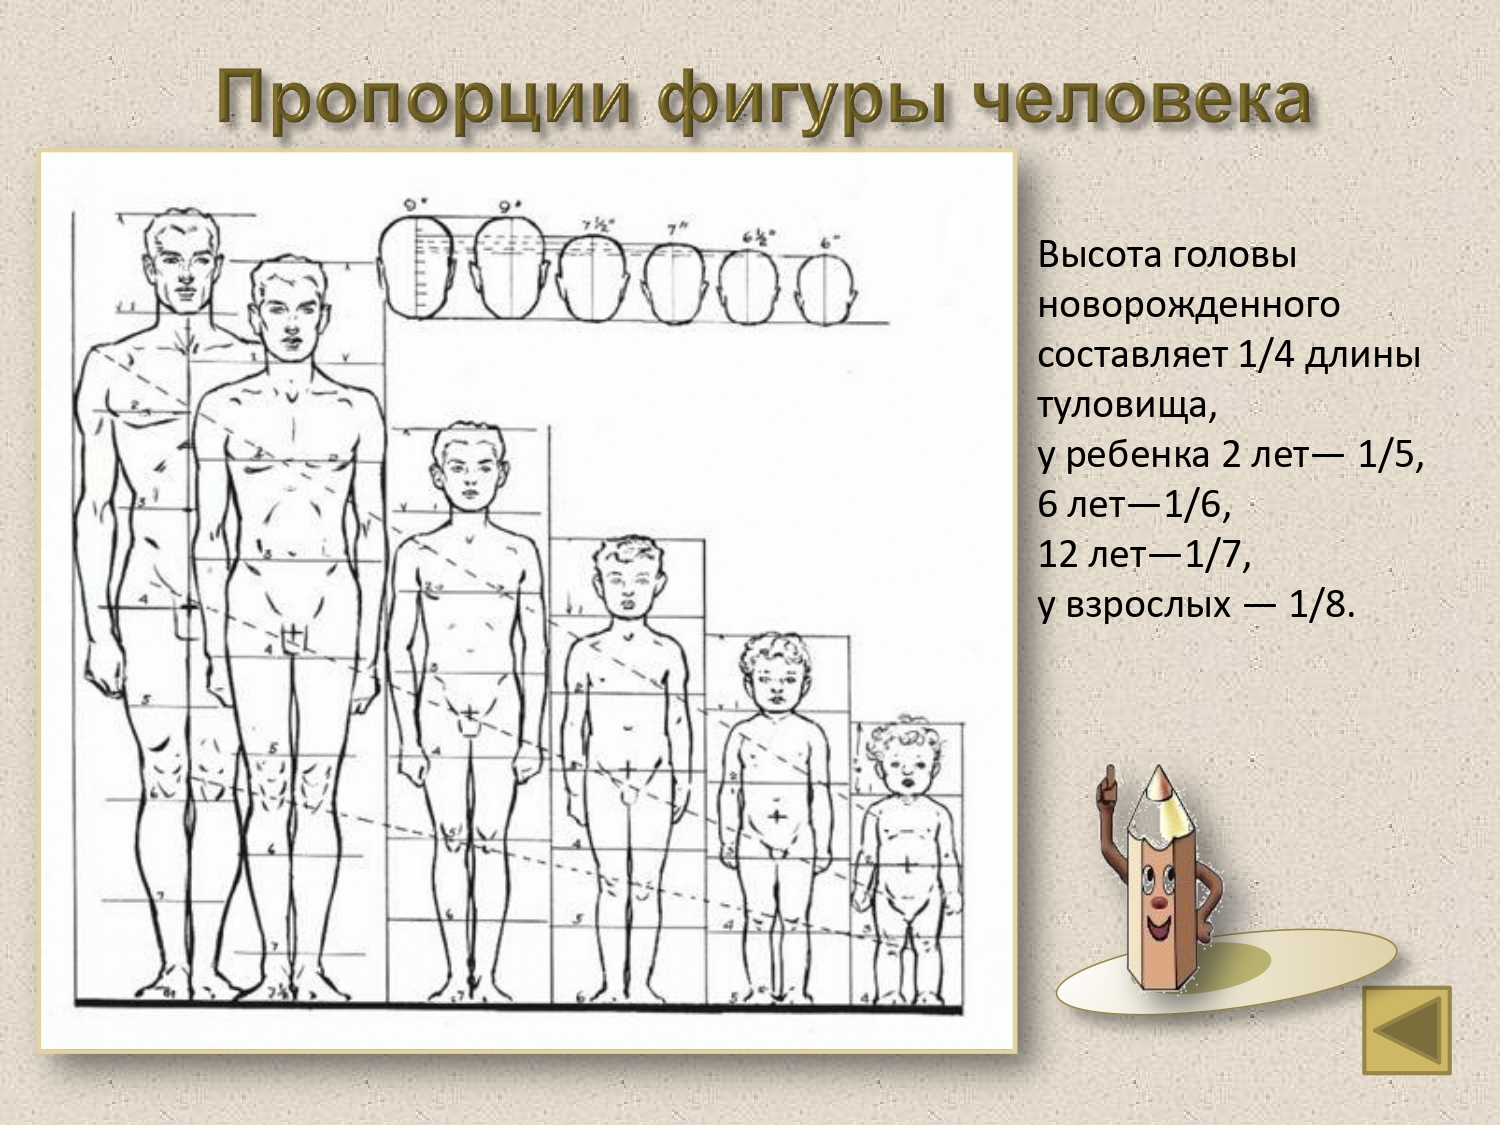 Человек 1 лет. Эндрю Лумис пропорции человека. Пропорции фигуры человека. Пропорции головы и тела человека. Пропорции человеческой фигуры.